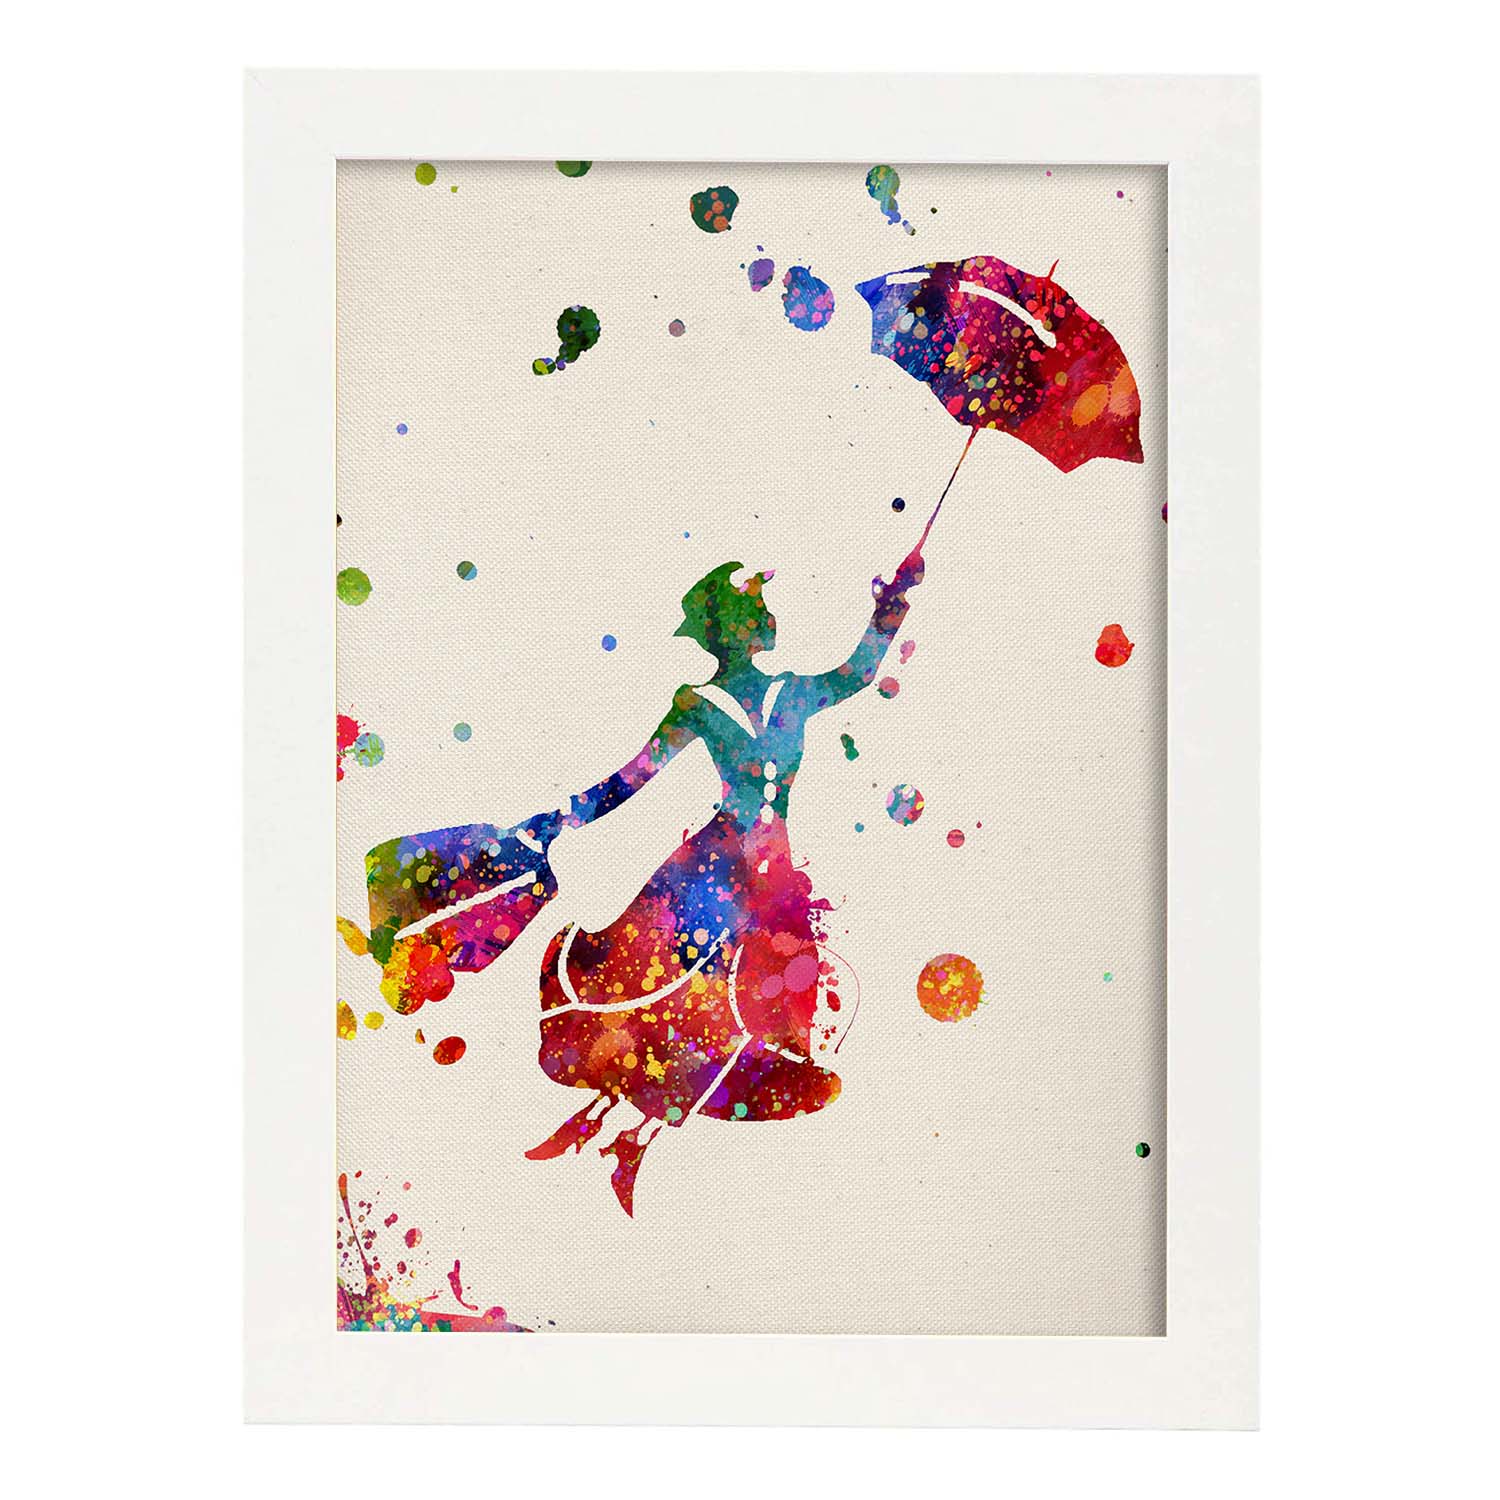 Lámina de la famosa pelicula Mary Poppins (volando) en Poster estilo explosión de color . Papel 250 gr.-Artwork-Nacnic-A3-Marco Blanco-Nacnic Estudio SL